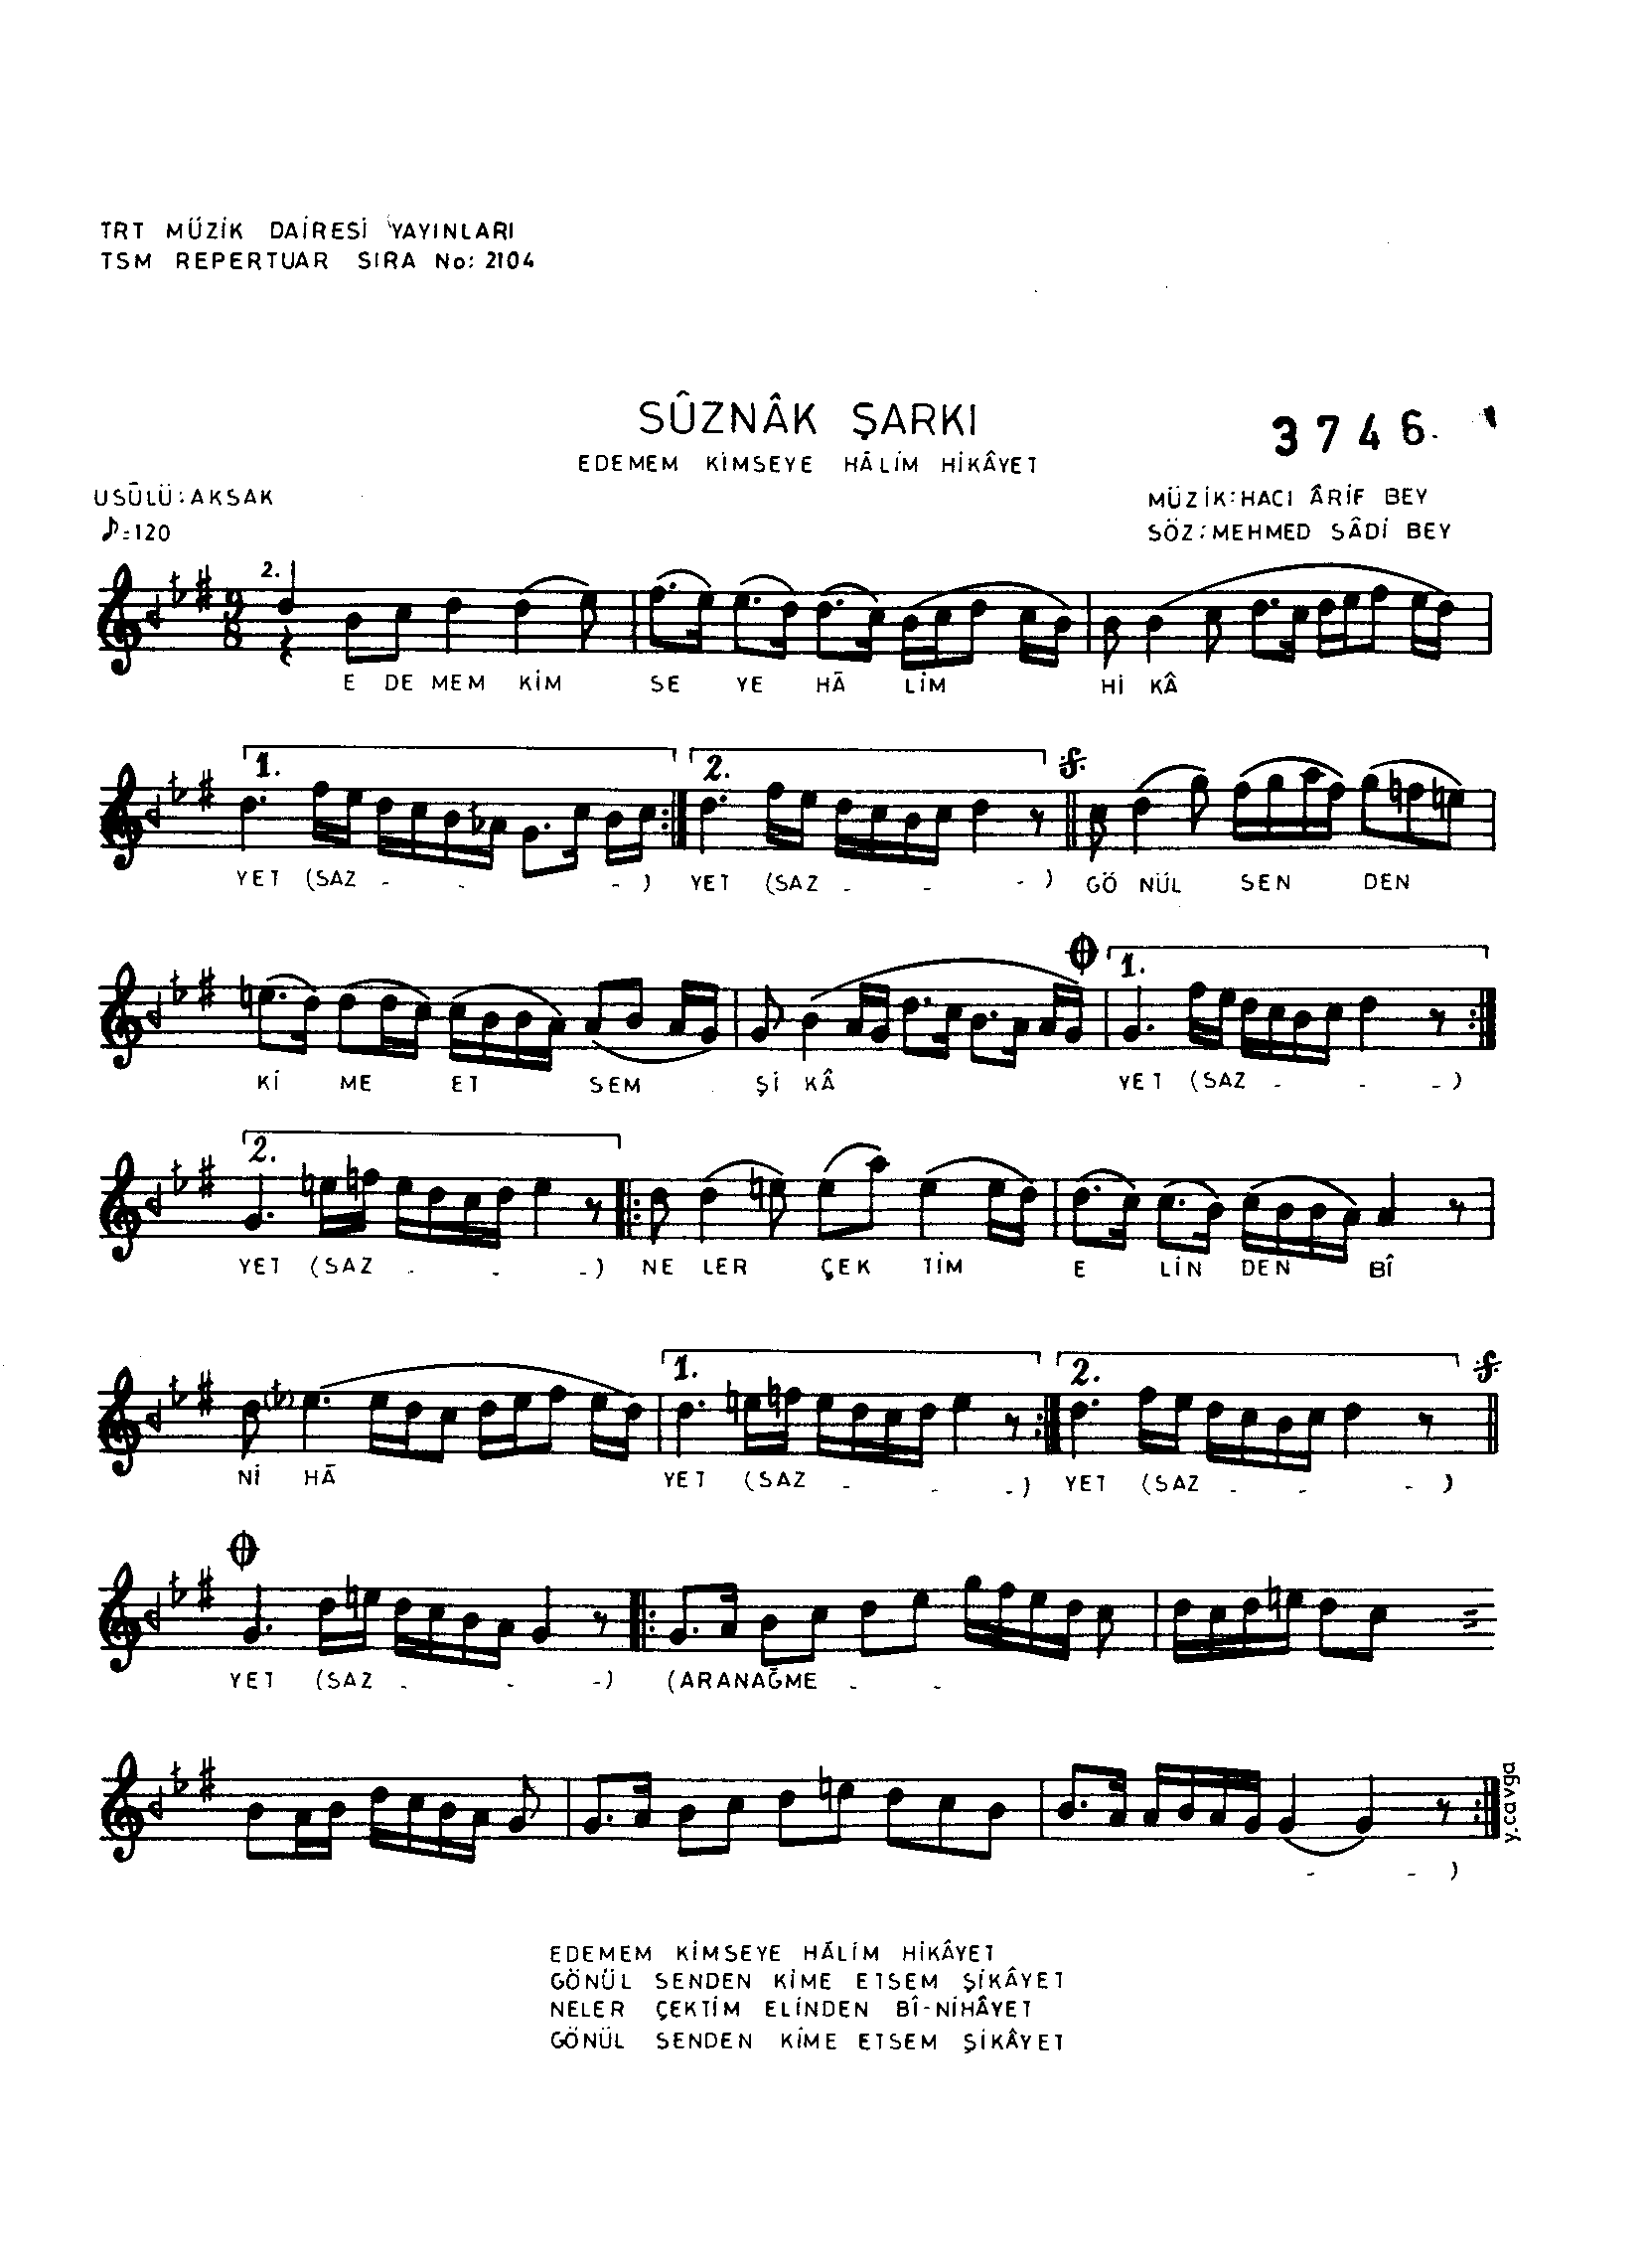 Sûz-Nâk - Şarkı - Hacı Arif Bey - Sayfa 1